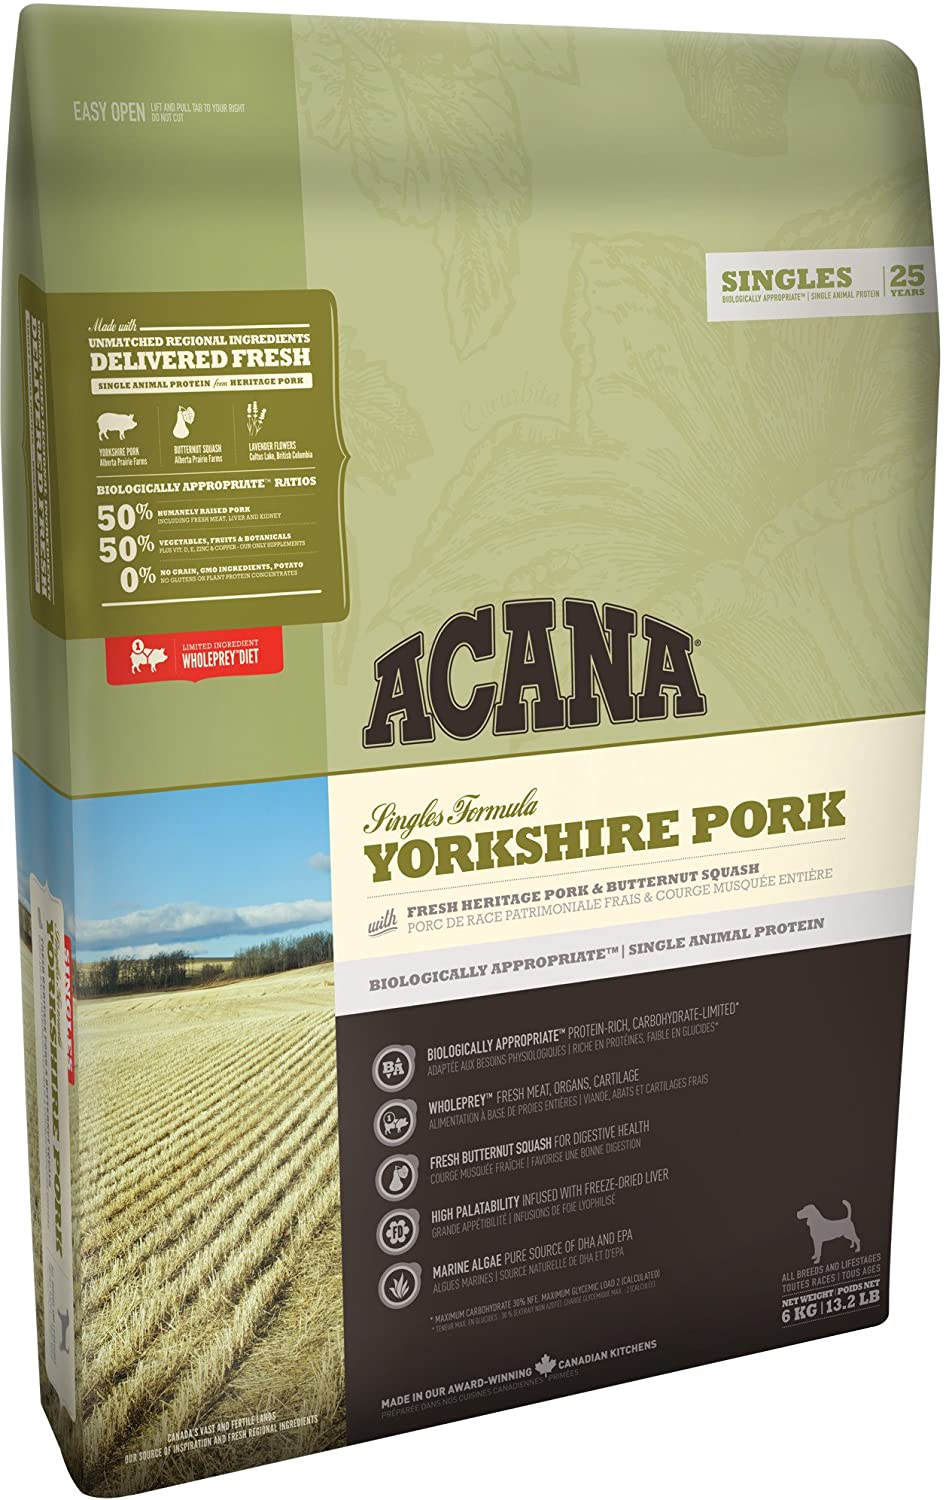  ACANA Yorkshire Pork Comida para Perros - 6000 gr 